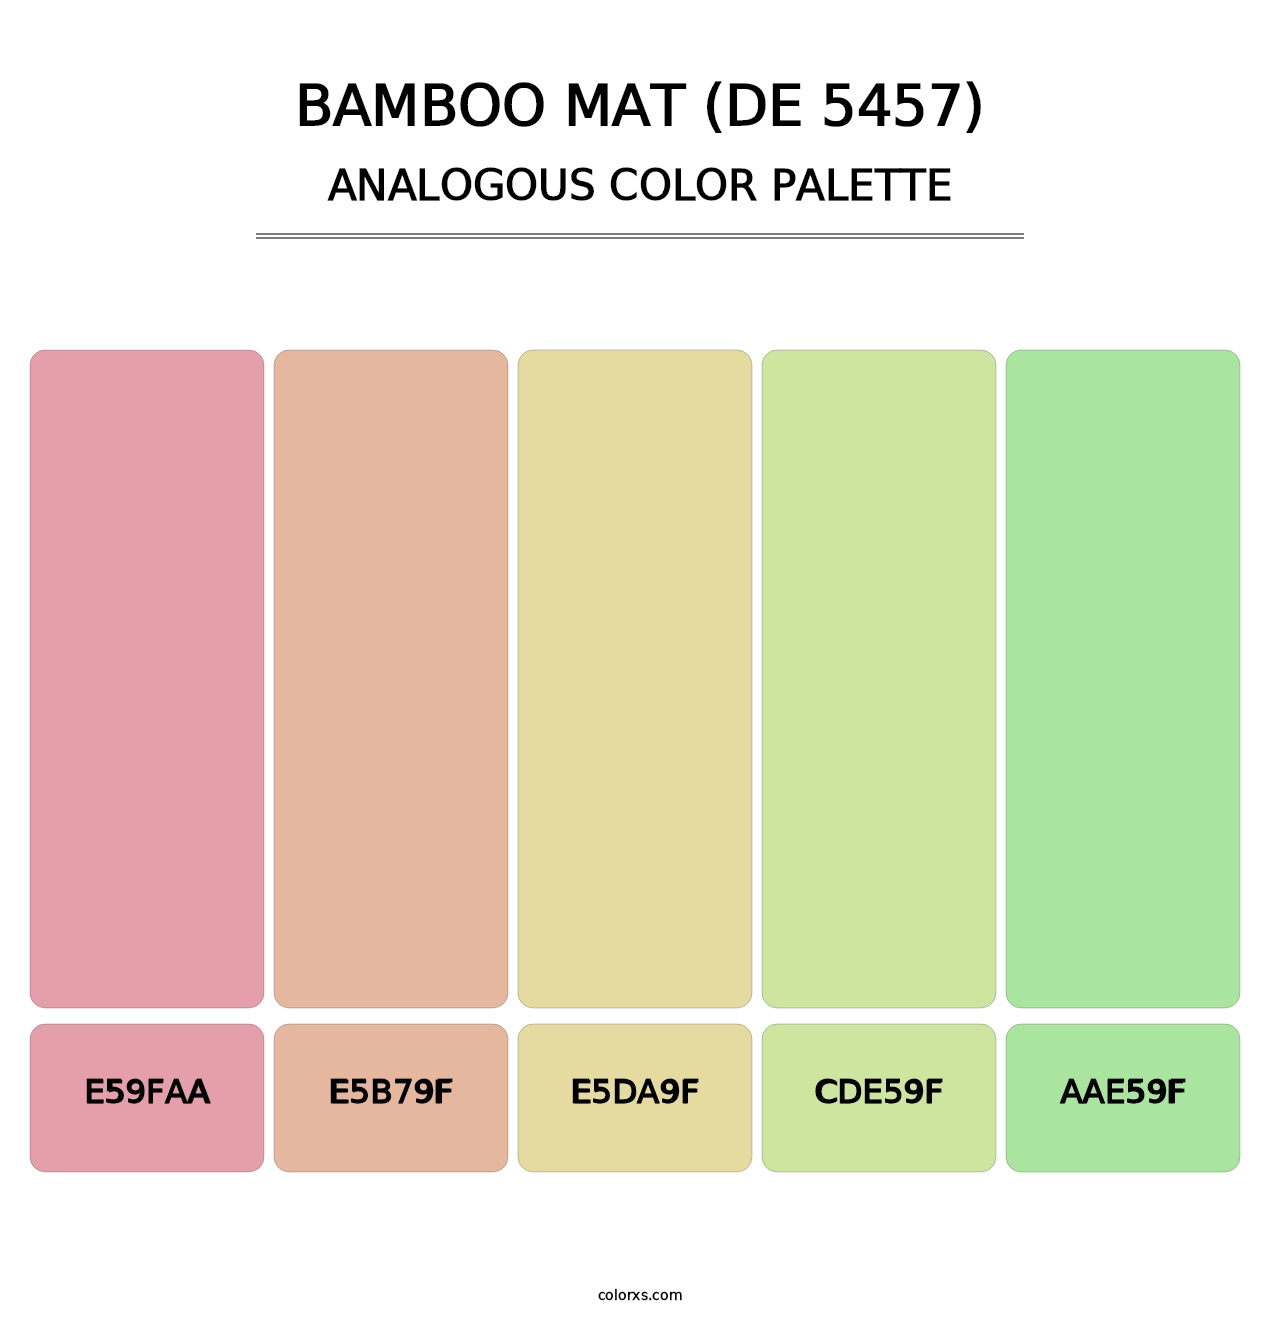 Bamboo Mat (DE 5457) - Analogous Color Palette